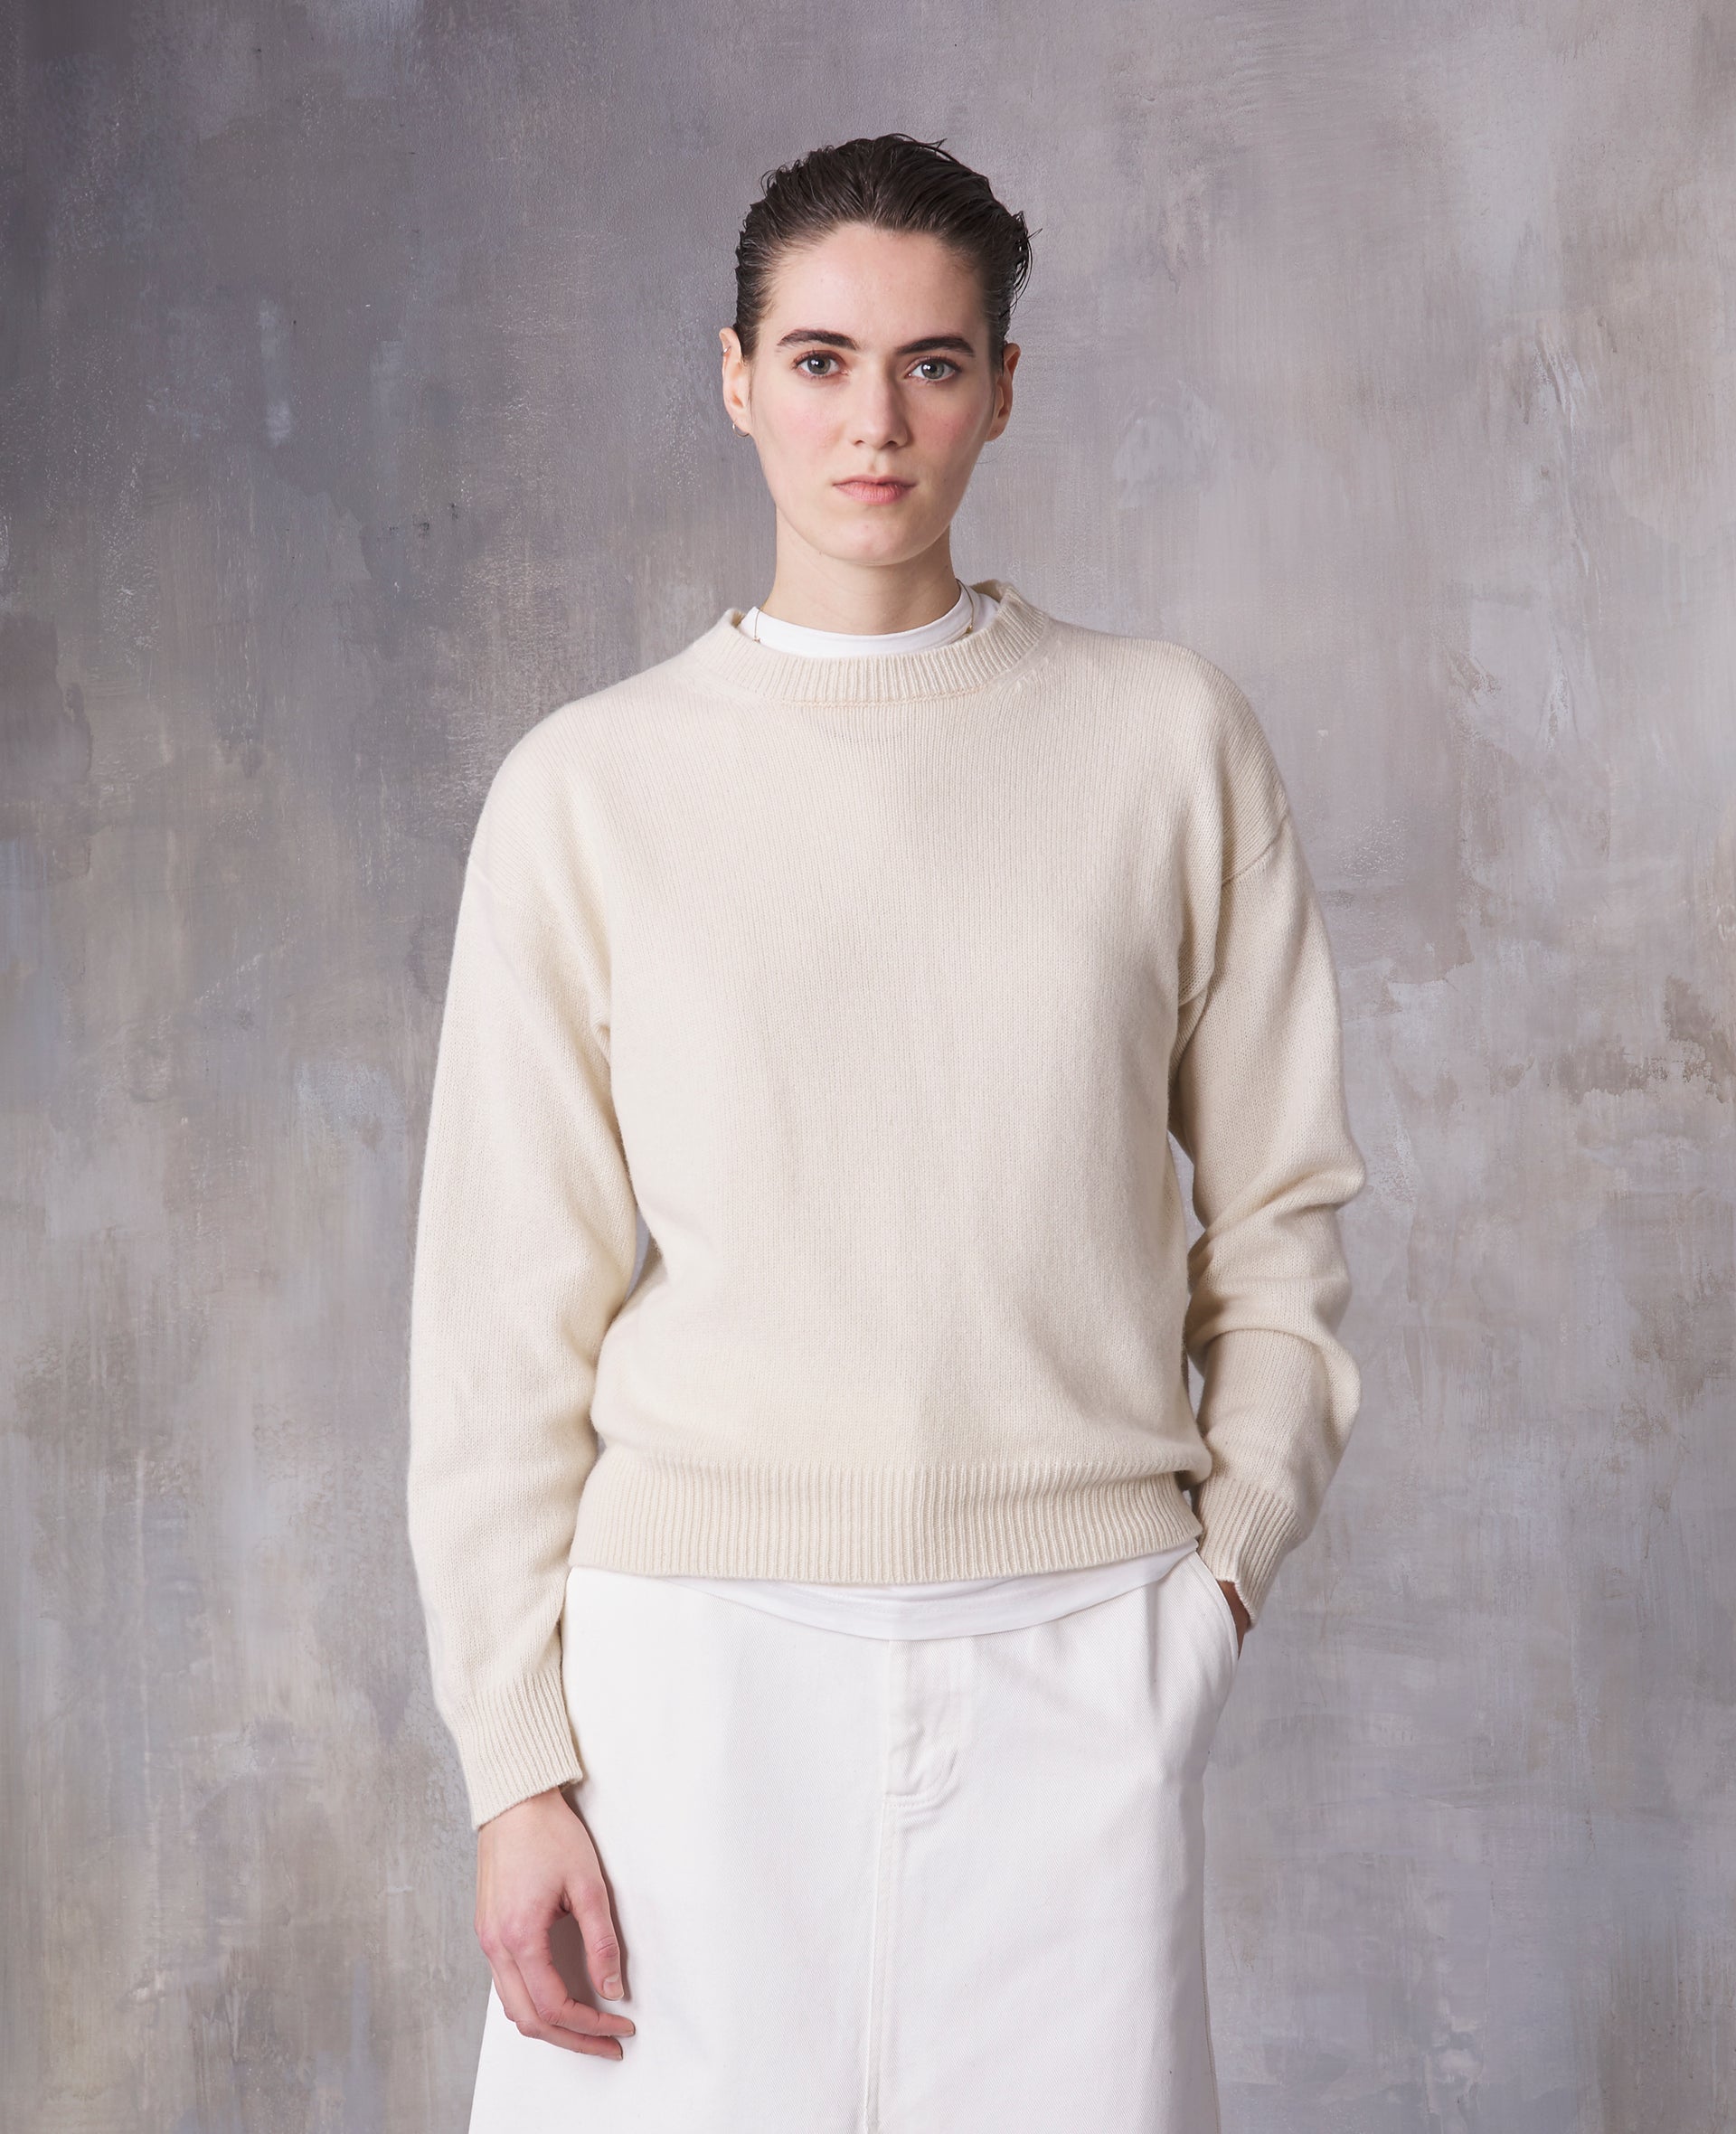 Palma sweater - Image 3